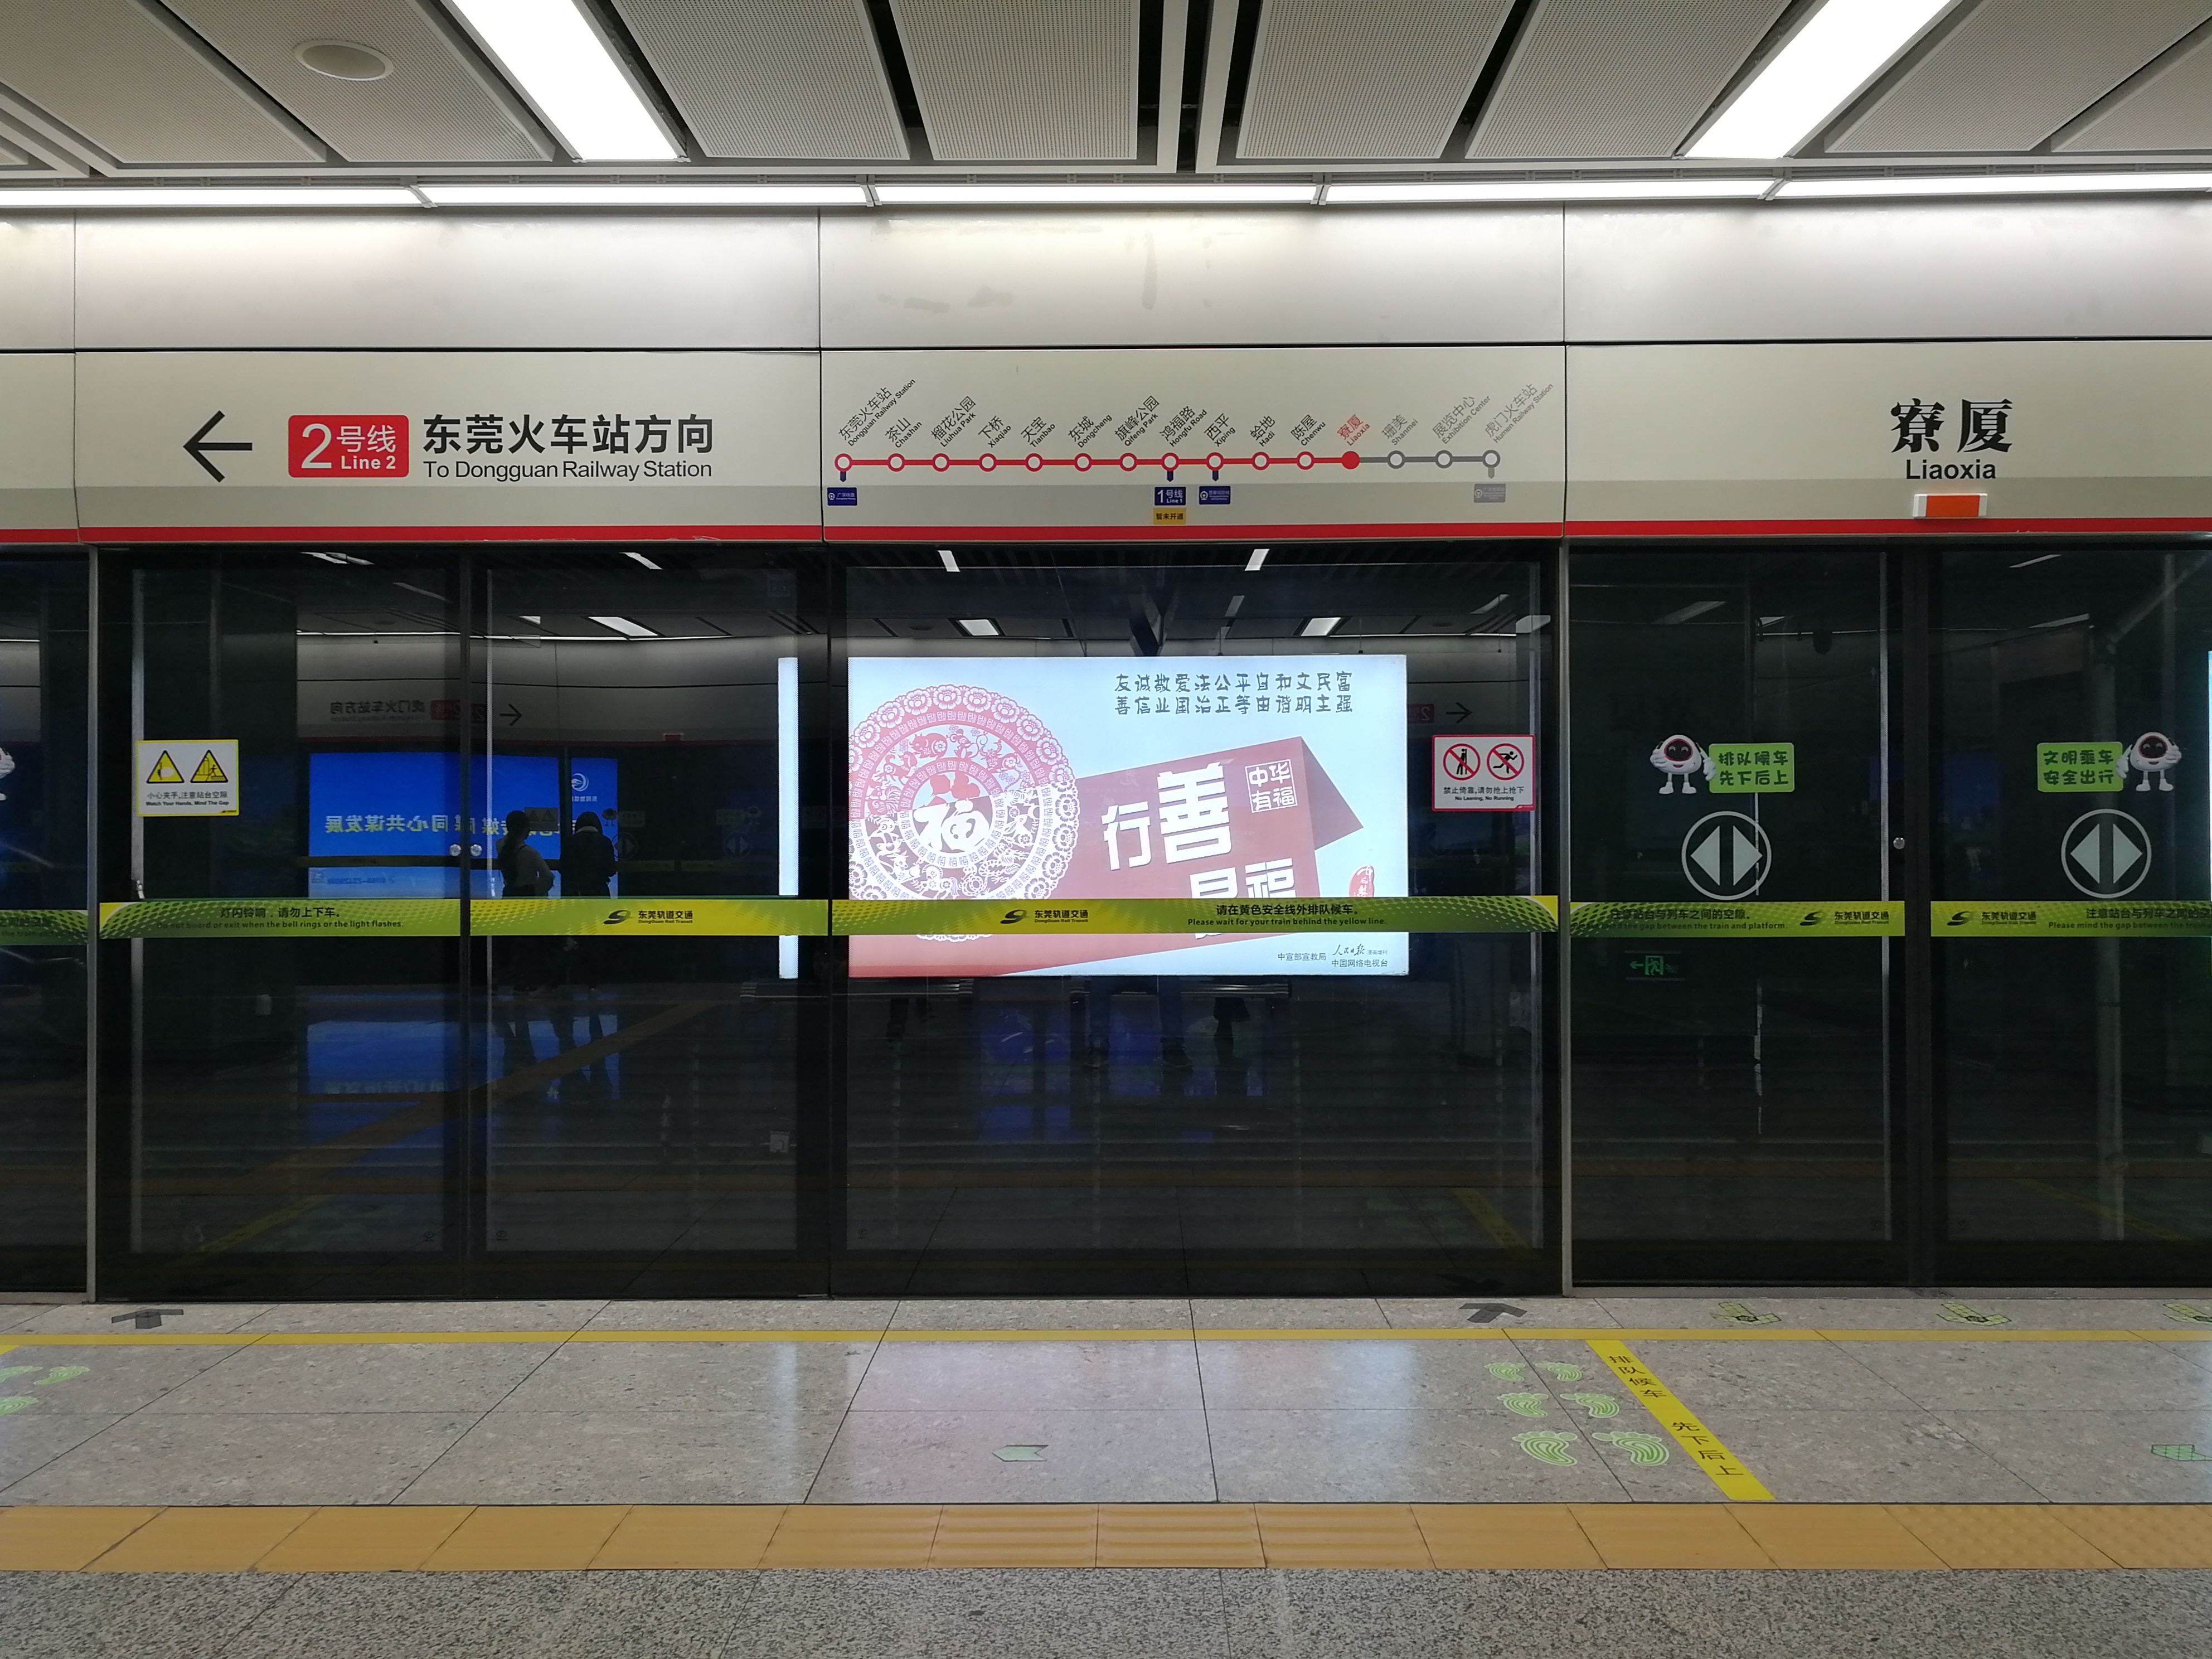 東莞軌道交通2號線捷運站台面